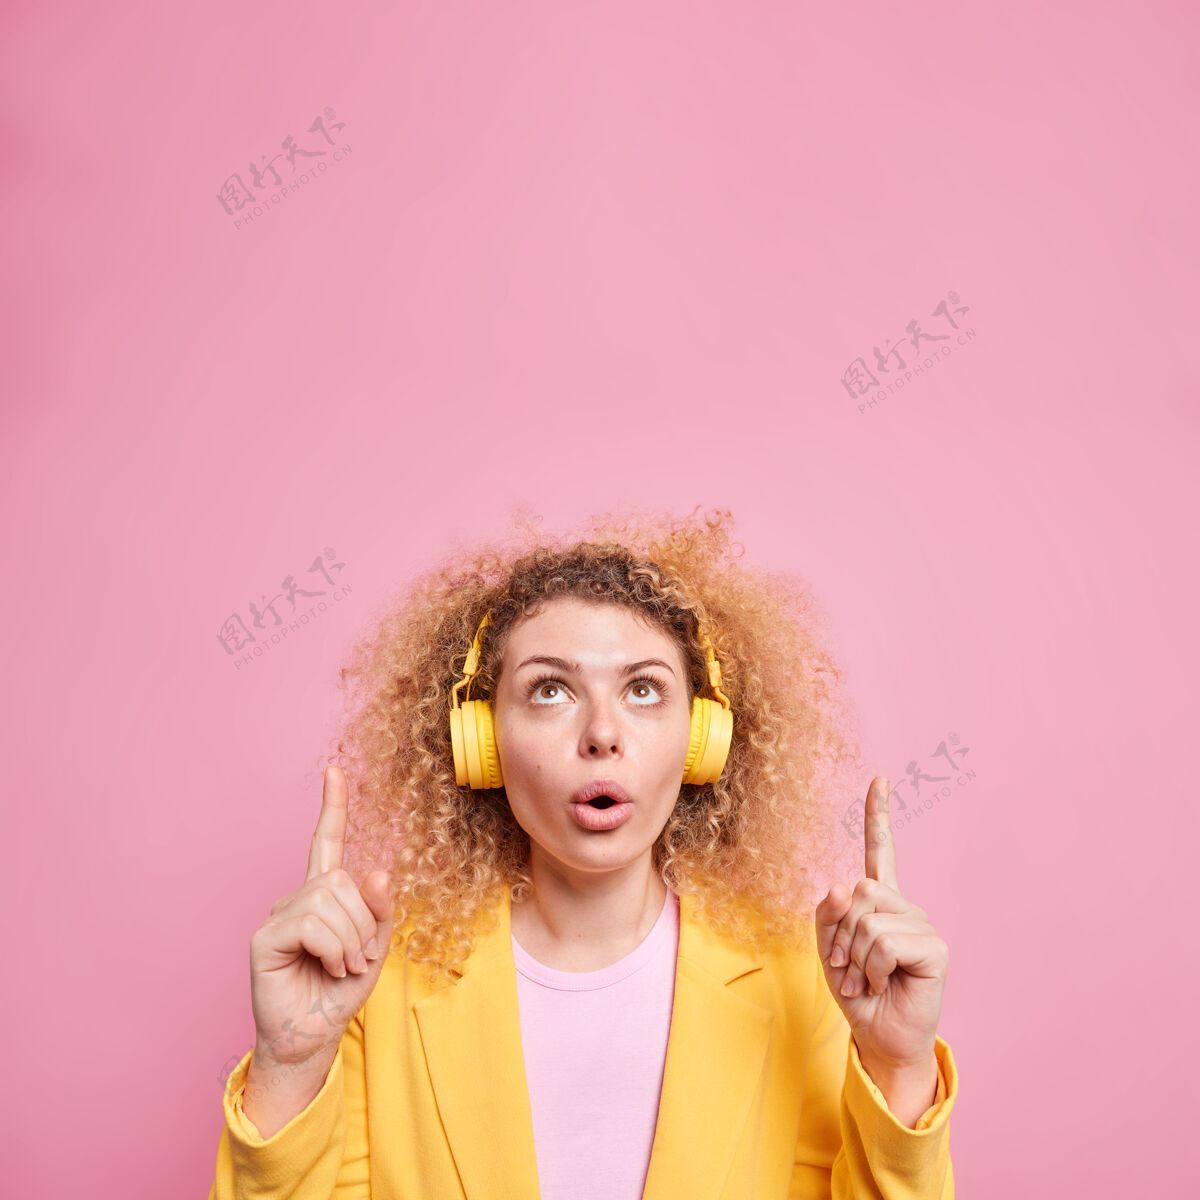 女性无言卷发女子的垂直镜头 表情惊异 向上展示了意想不到的报价 头顶戴着无线耳机 耳朵上放着最喜欢的播放列表头顶正式惊呆